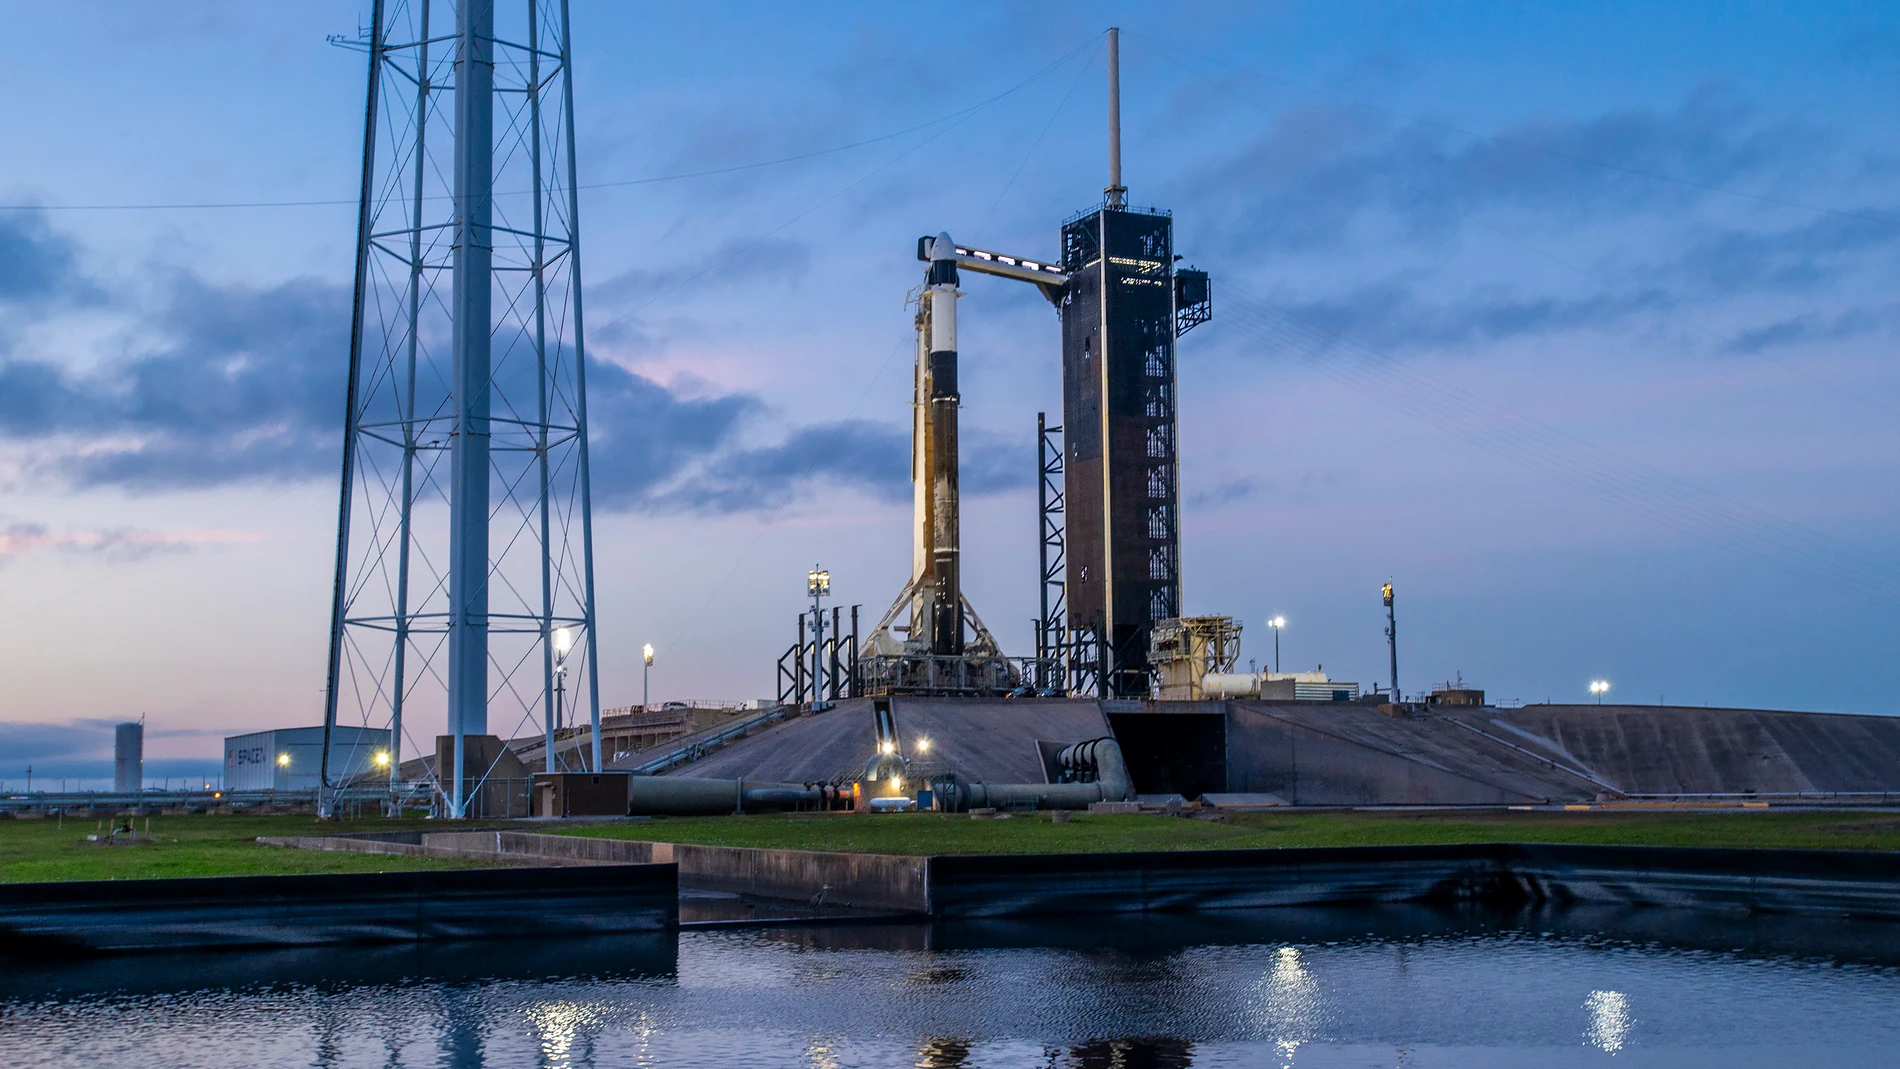 Fotografía cedida este miércoles, 17 de enero, por SpaceX, en la que se registró el cohete Falcon 9 con la cápsula Dragon, que llevará la misión 3 (Ax-3) de Axiom a la Estación Espacial Internacional